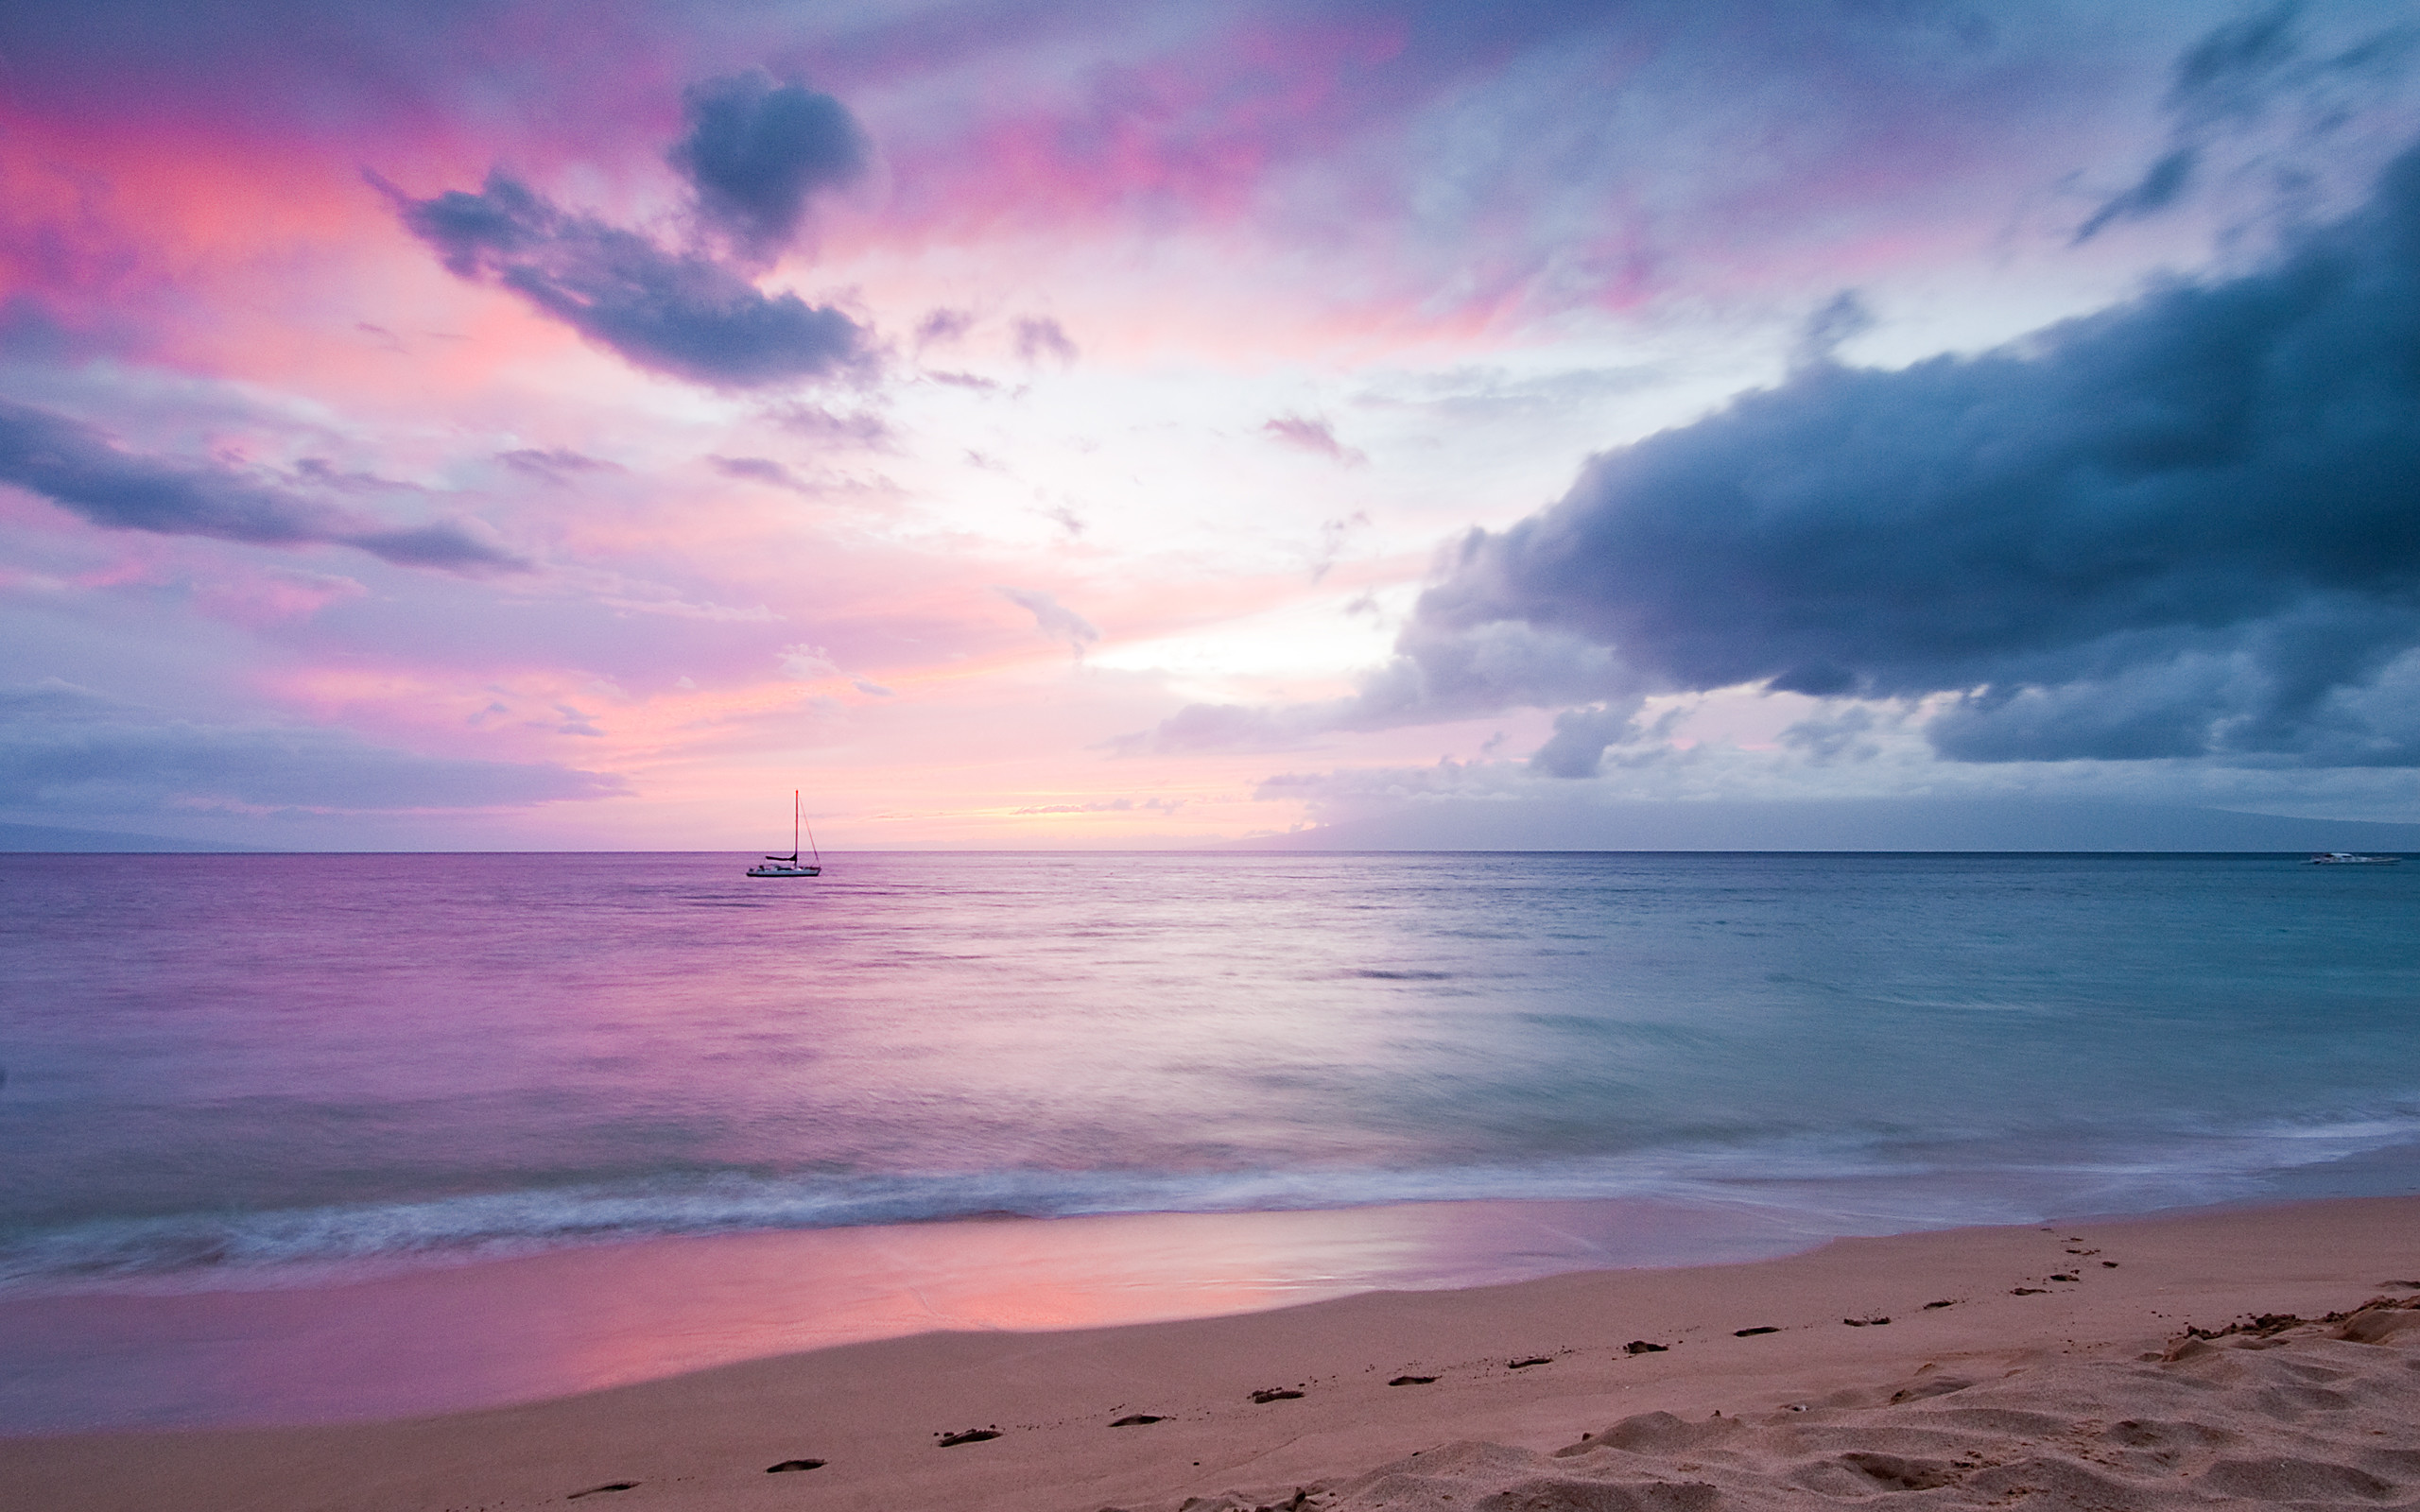 2560x1600 Beaches & Islands HD Wallpapers | Beach Desktop Backgrounds,Stock ... src